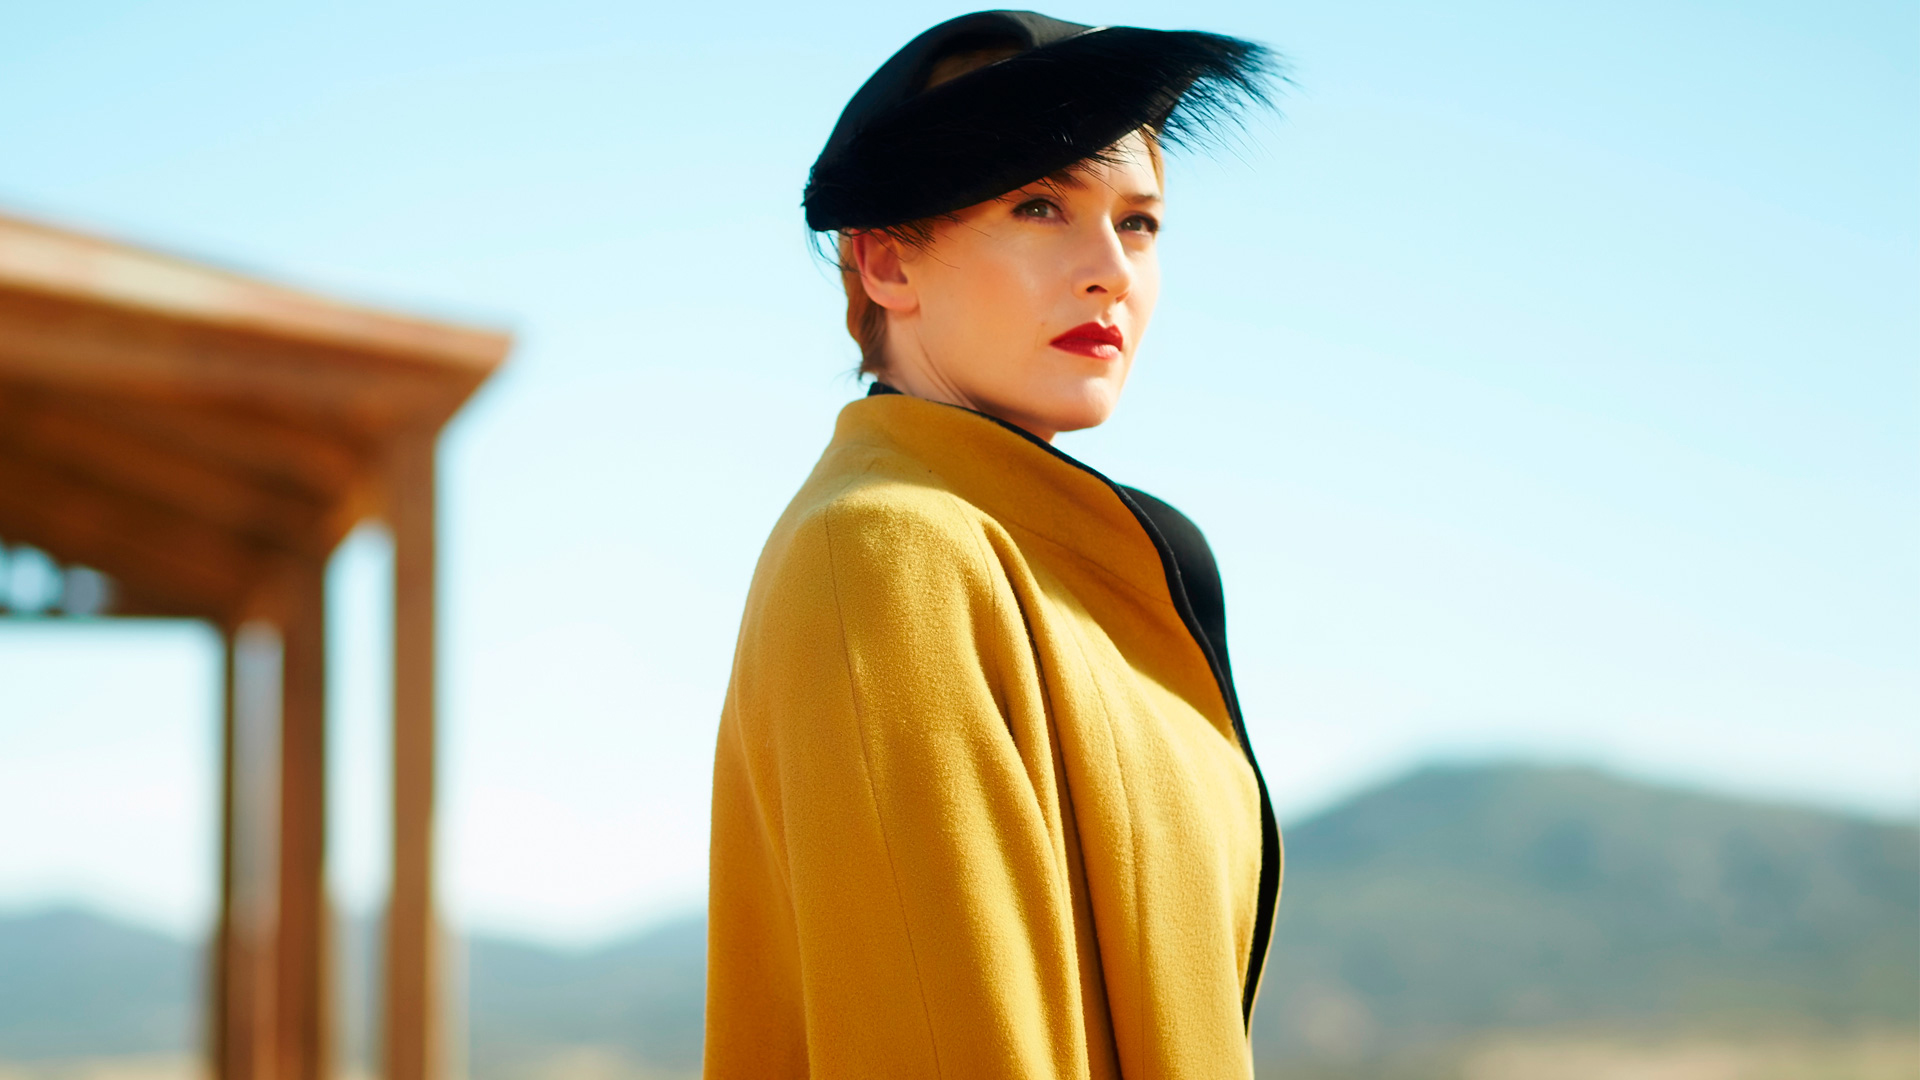 Wallpaper Kate Winslet, The Dressmaker, 2015 movie, celebrity, blonde, hat